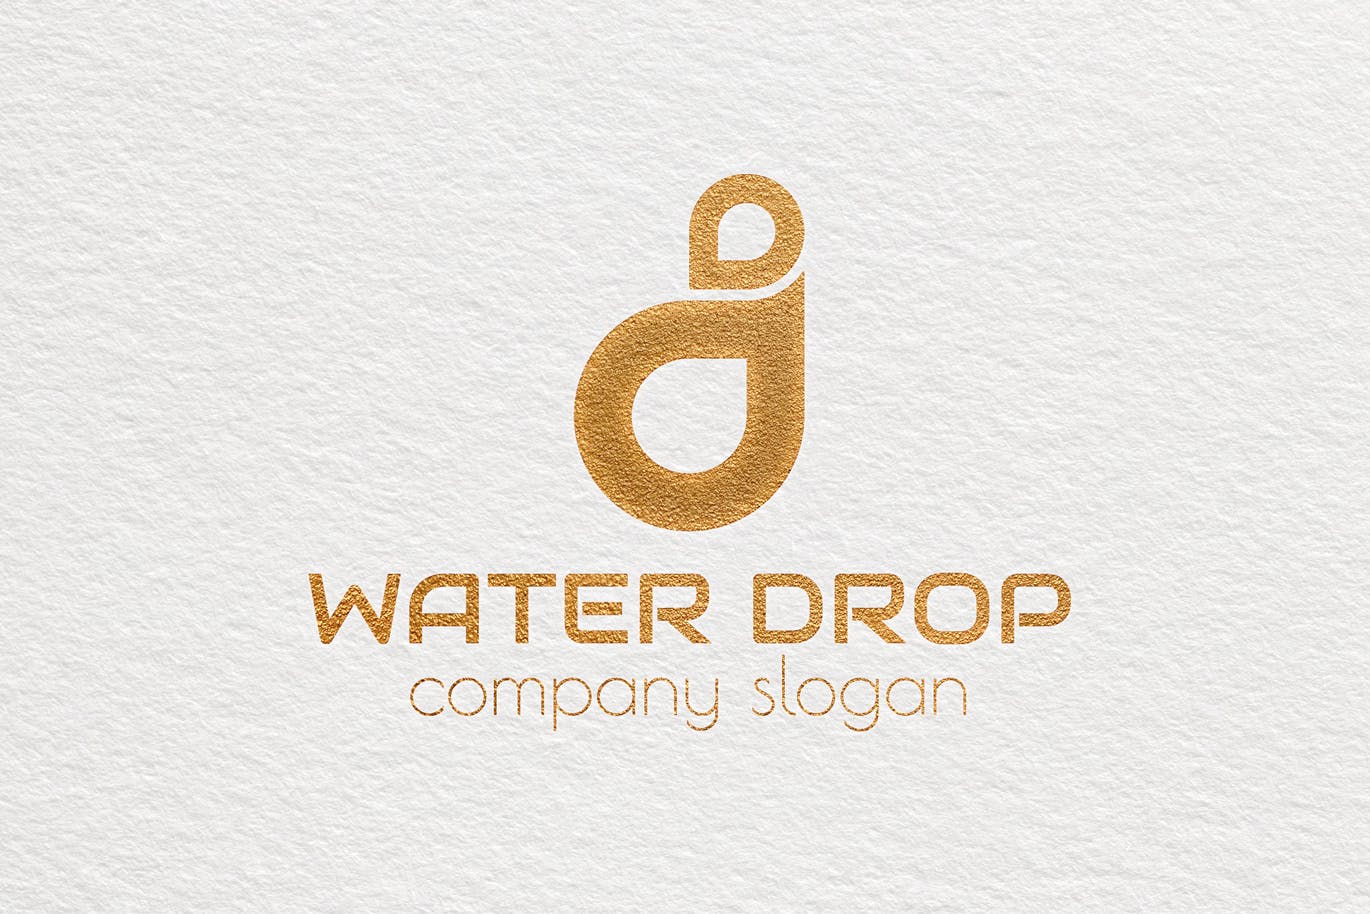 水滴几何图形创意Logo设计第一素材精选模板 Water Drop Creative Logo Template插图(3)